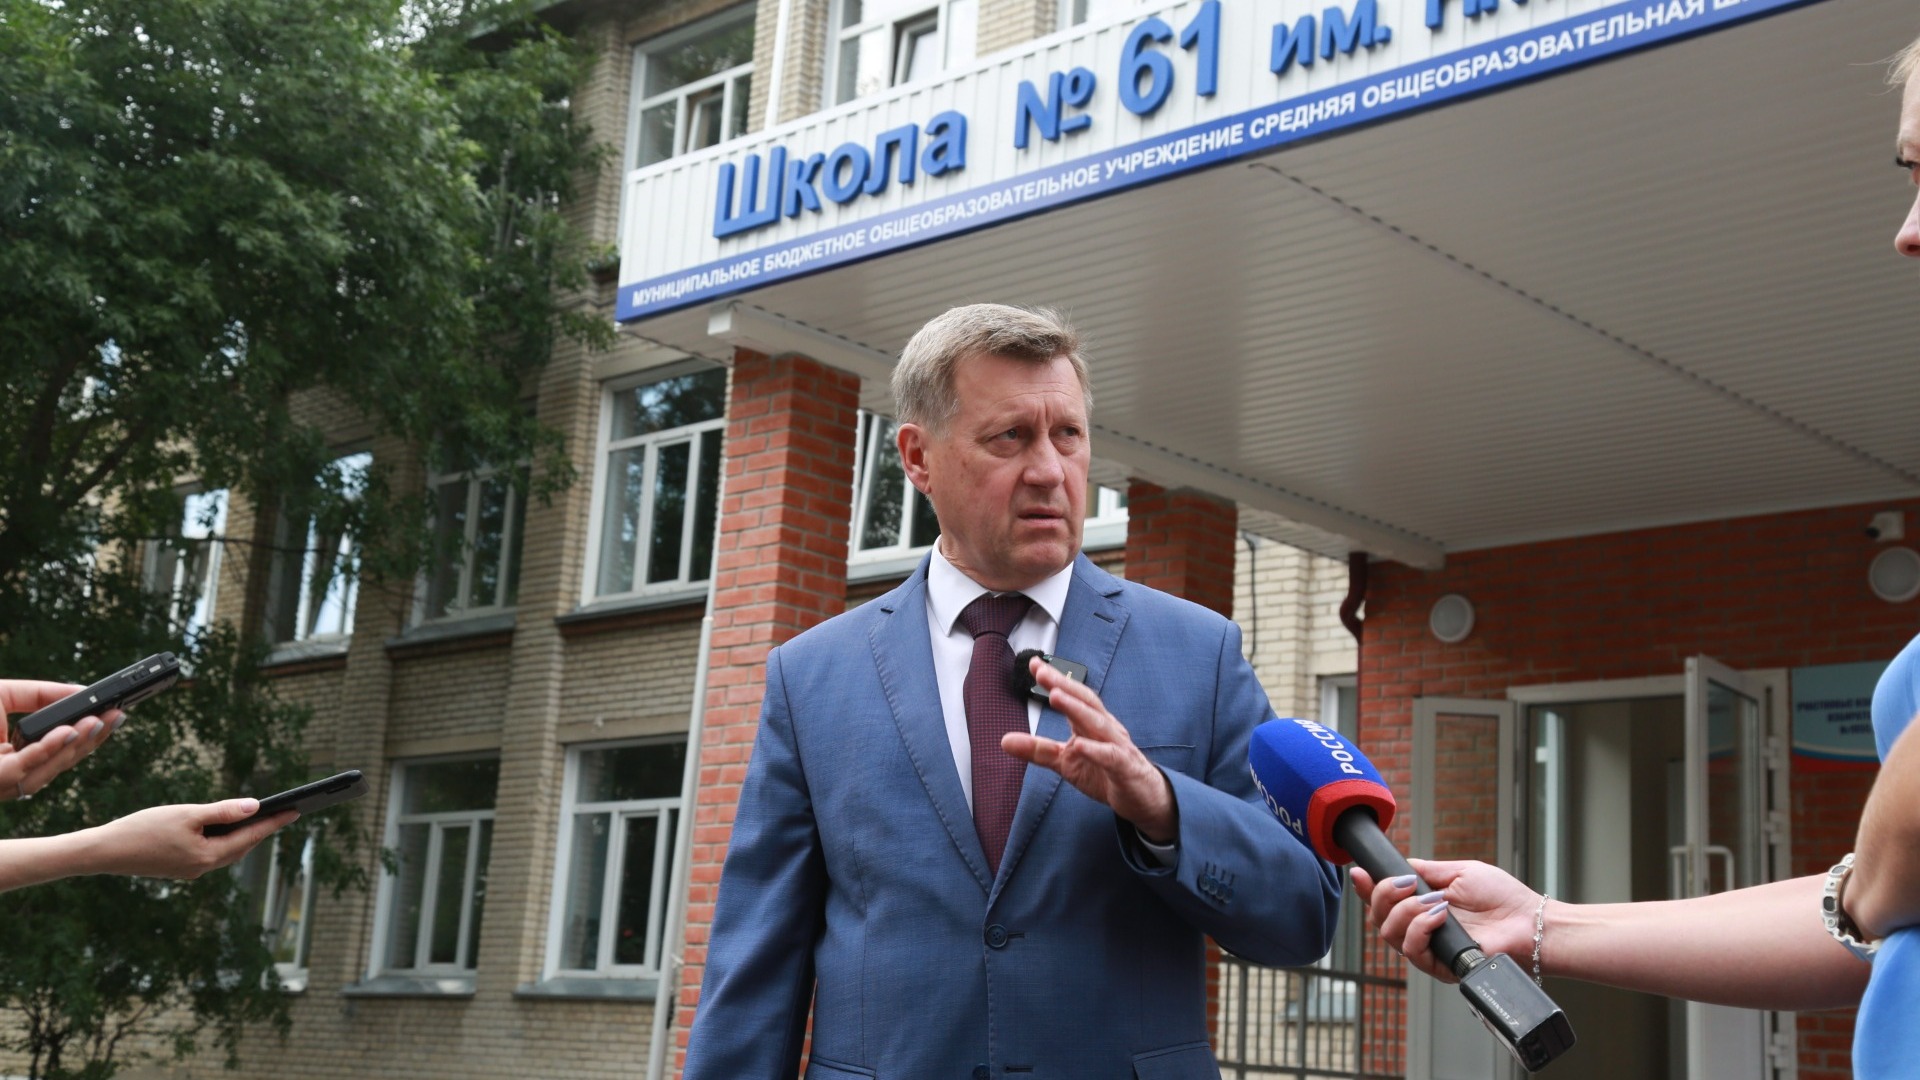 Мэр Анатолий Локоть оценил качество ремонта в школе №61.